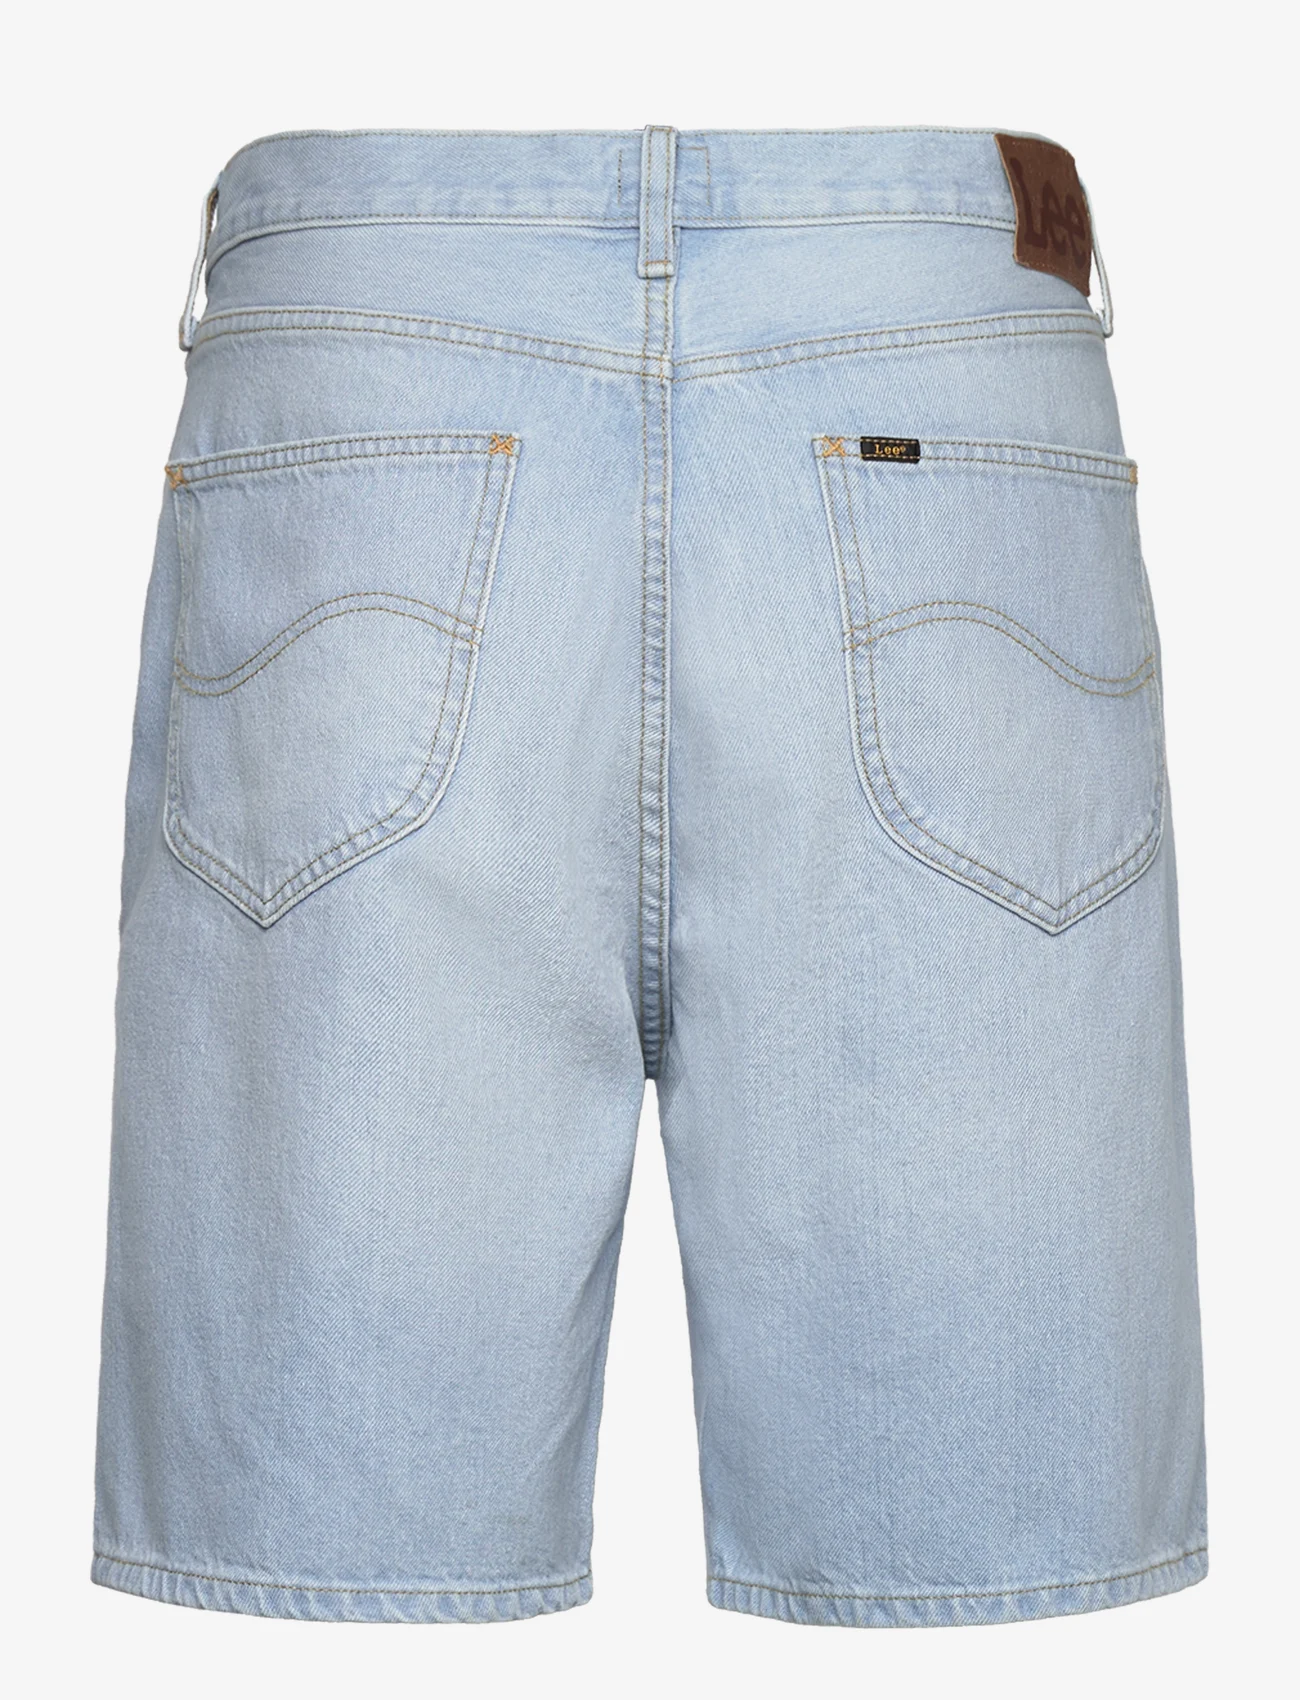 Lee Jeans - ASHER SHORT - džinsiniai šortai - light stone wash - 1